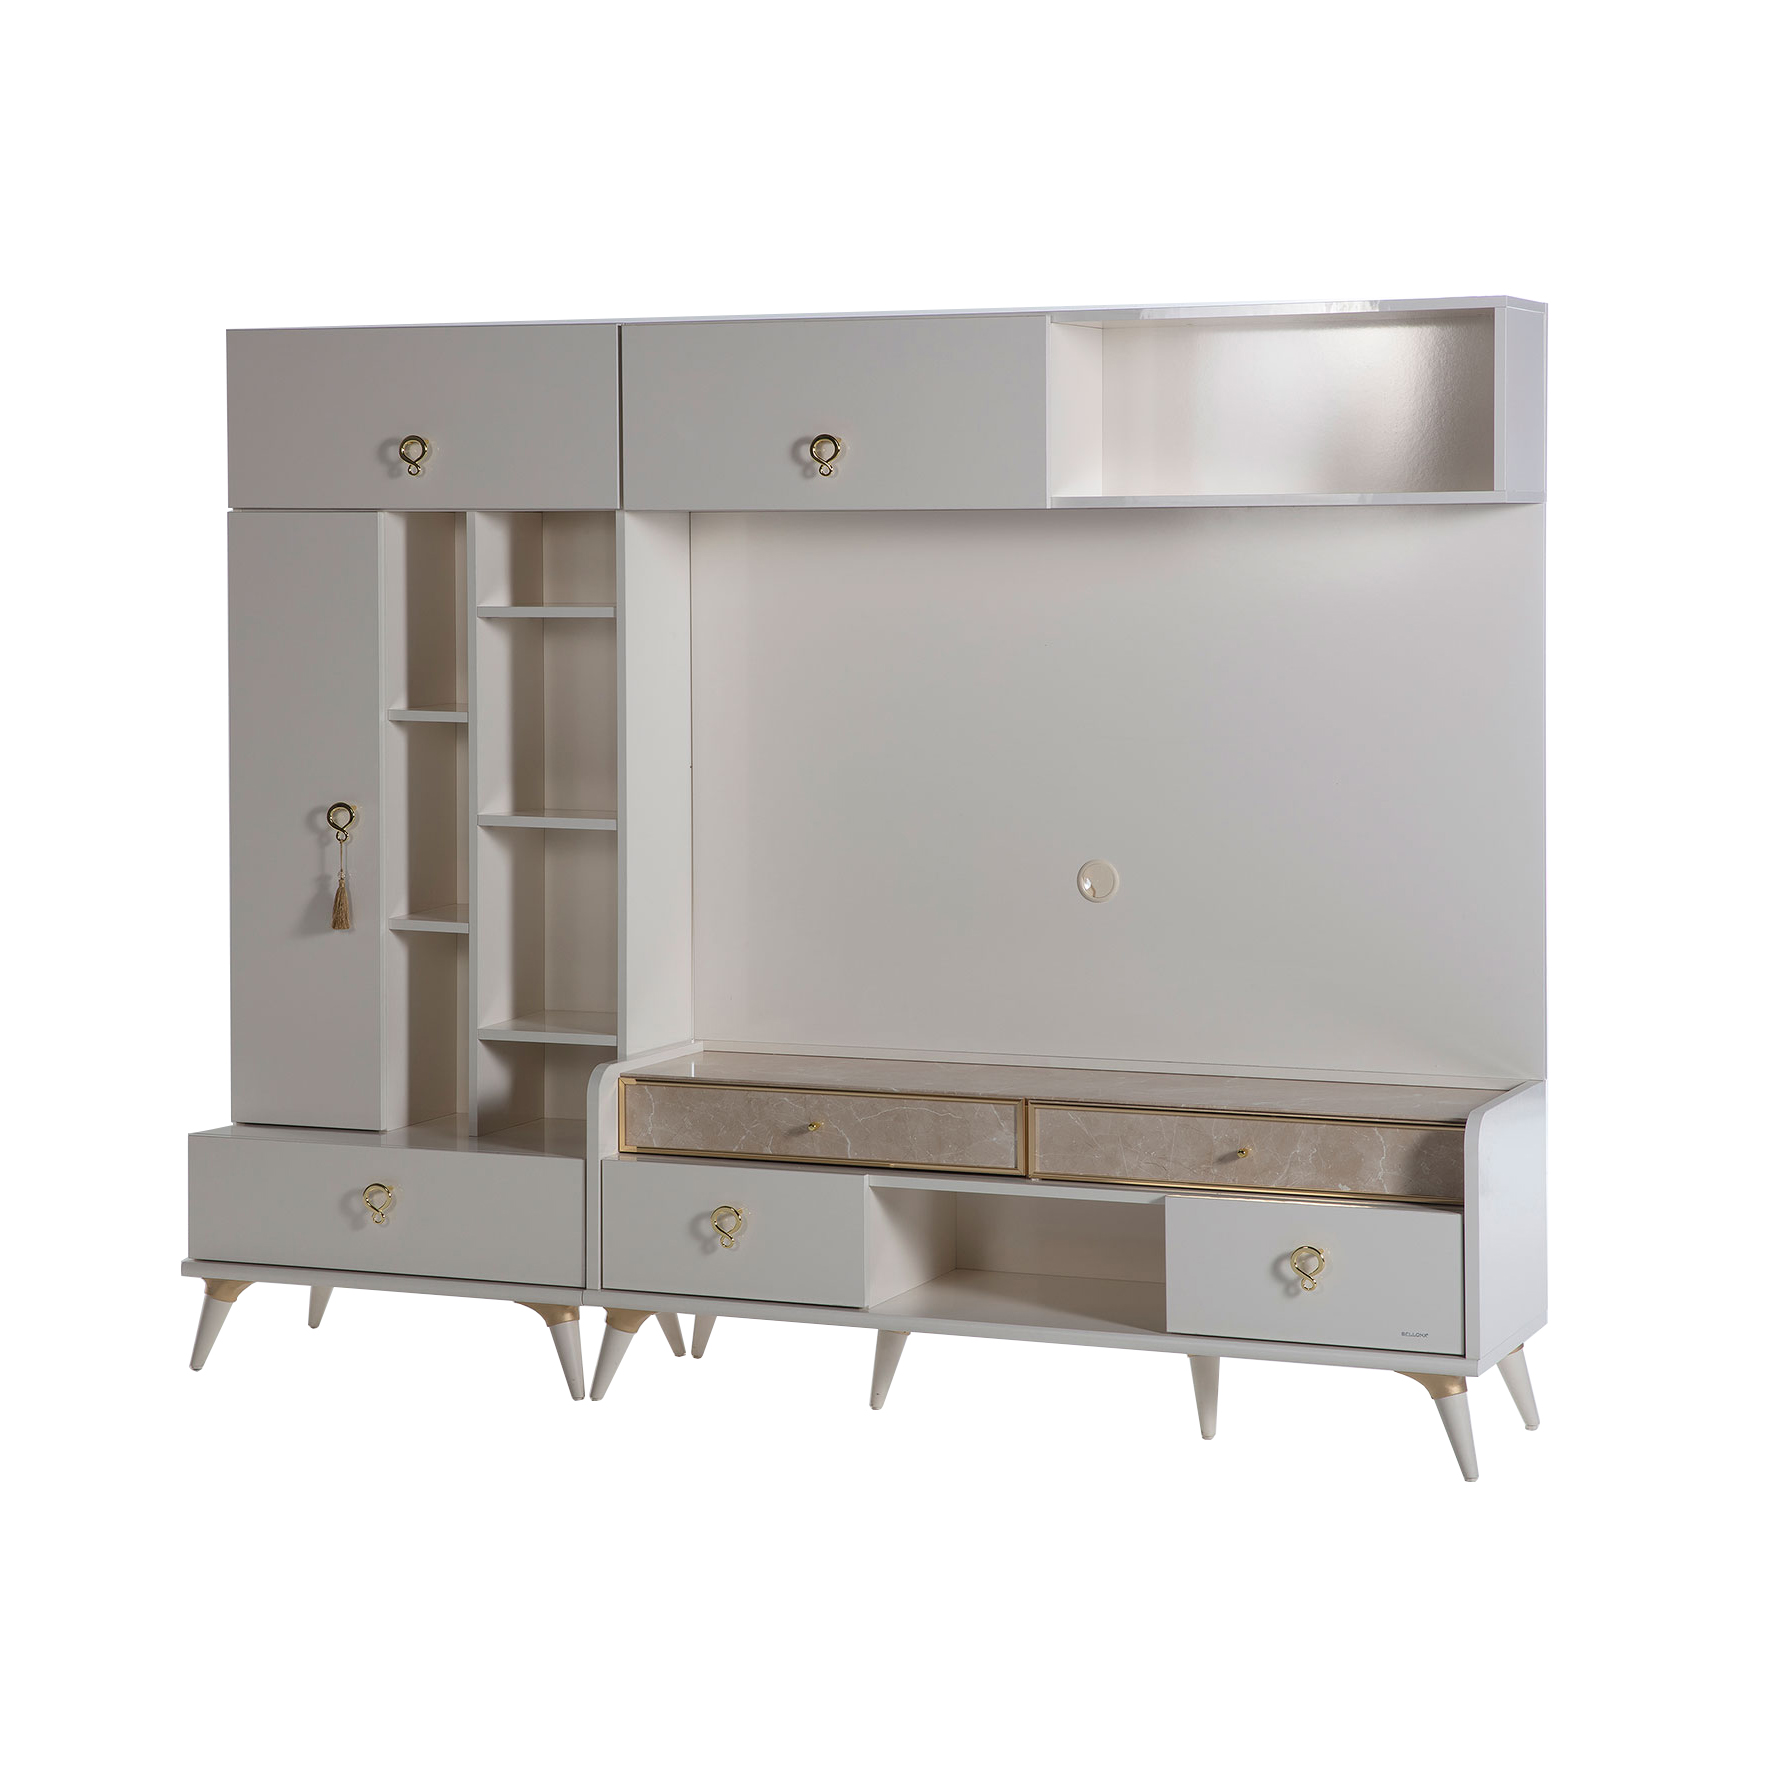 Книжный шкаф Bellona Monreal, размер 76х45х180 см (MONR-15D)MONR-15D